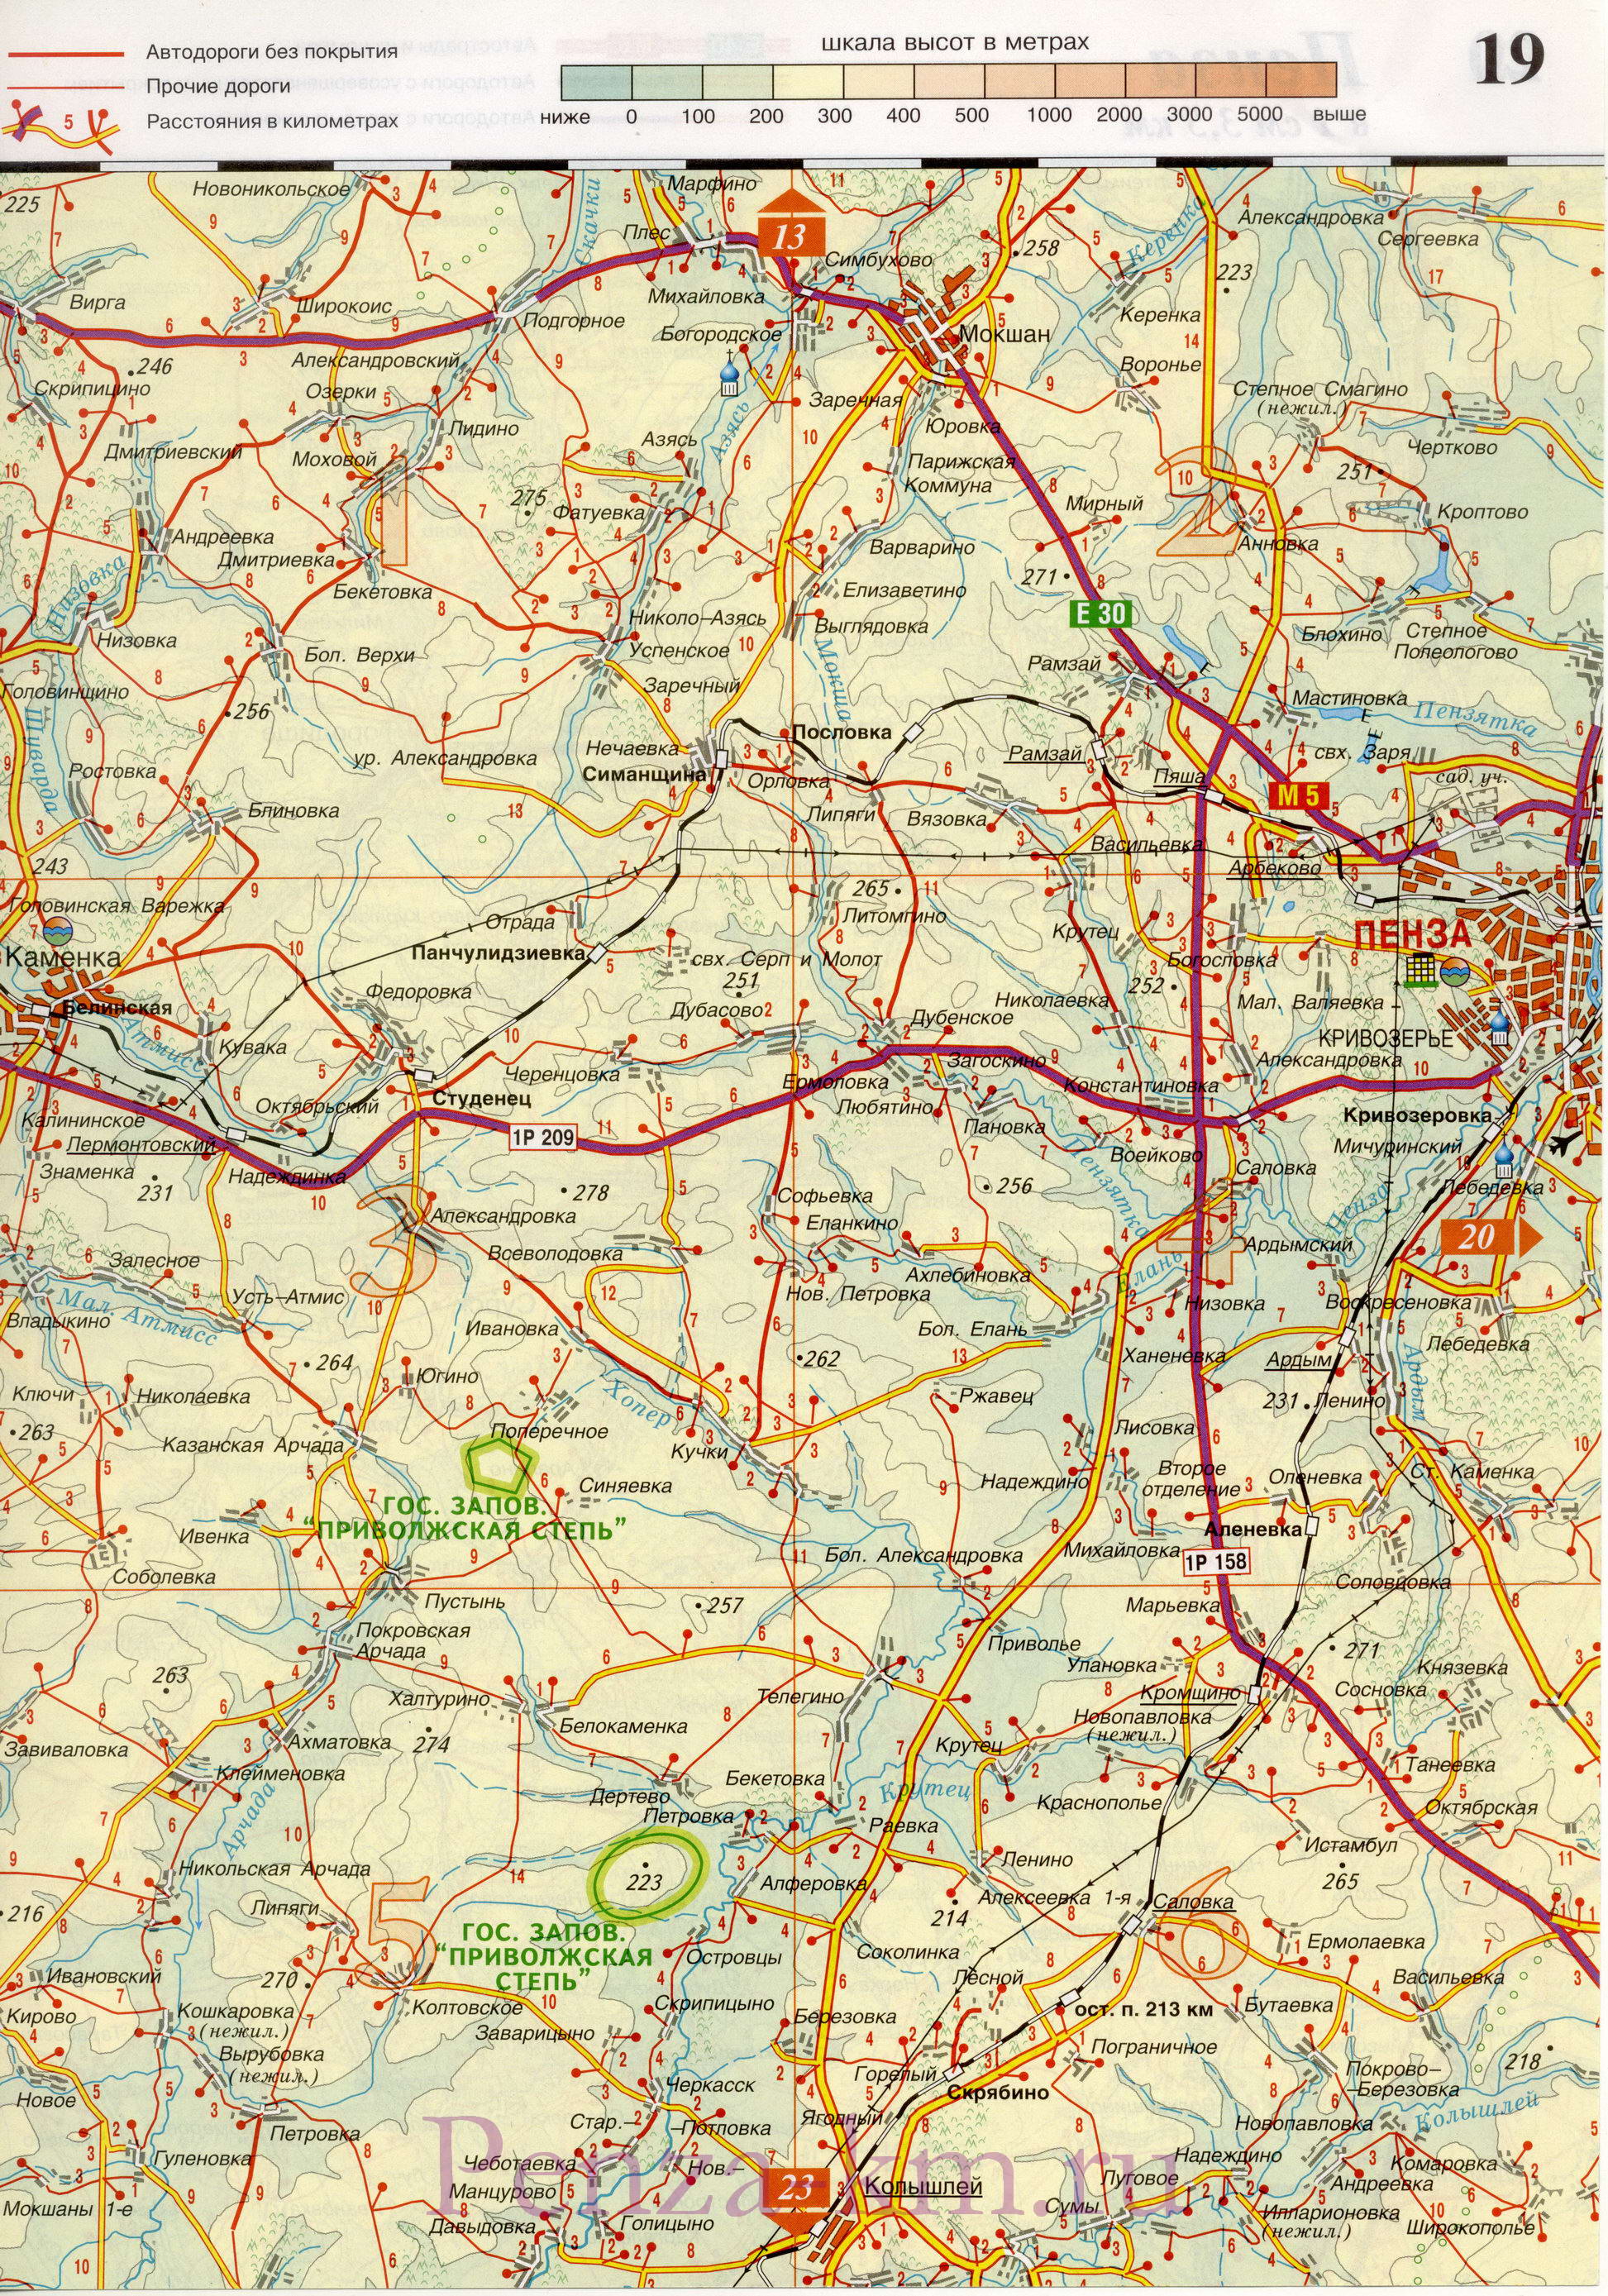  Пенза на карте России. Карта дорог Пензы и окрестностей (название города Пенза по реке Пенза), A0 - 